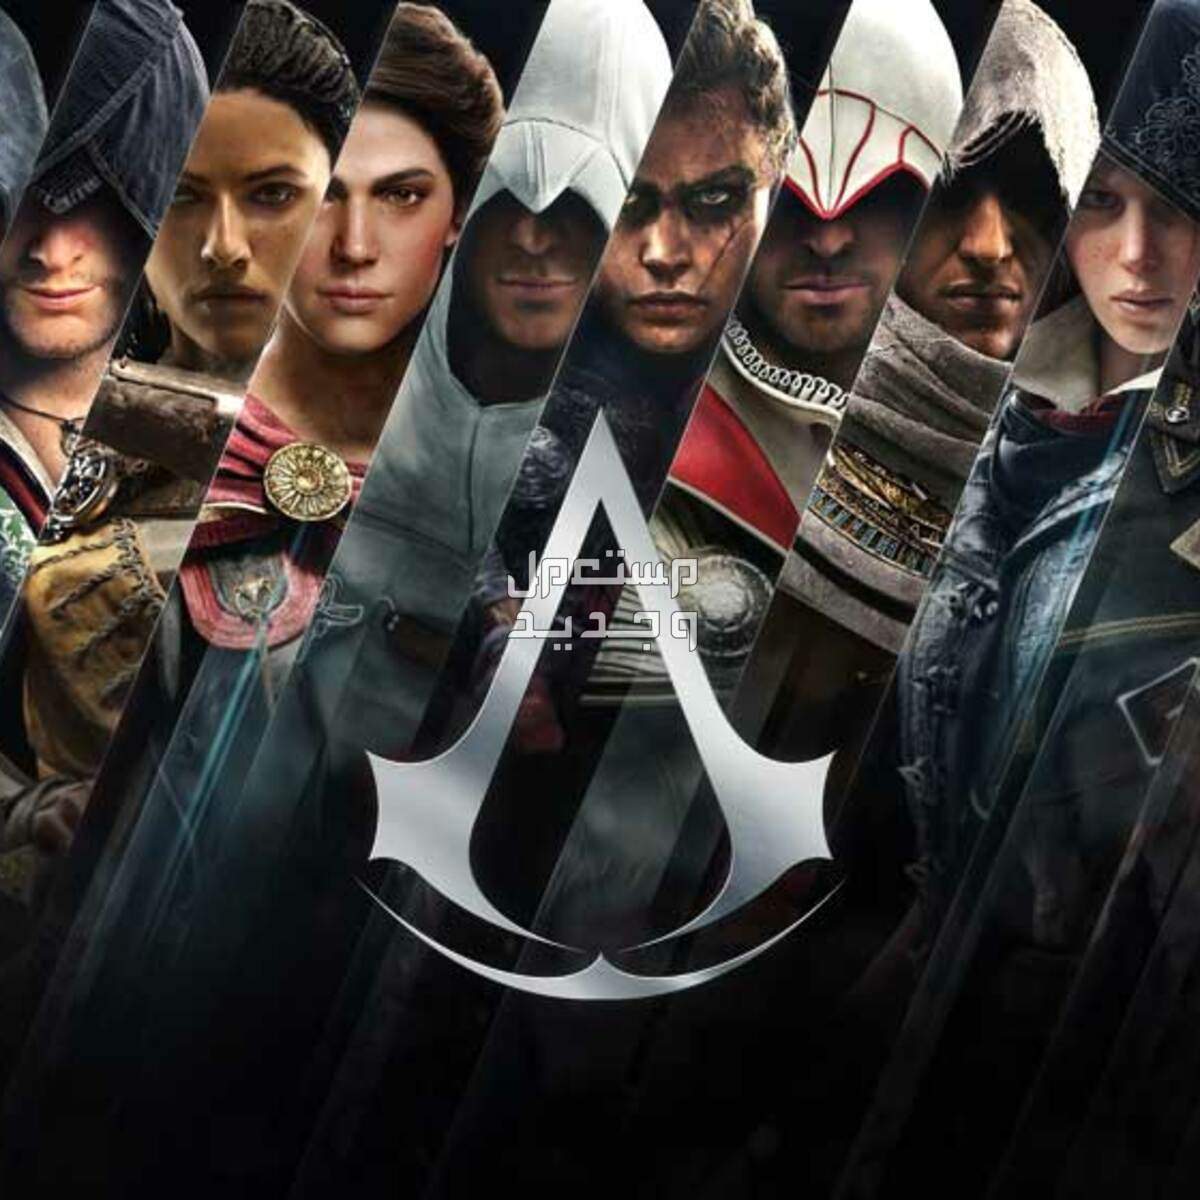 معك لابتوب ألعاب؟ تسلى و تعلم التاريخ مع Assassin's Creed في الأردن سلسلة ألعاب أساسنز كريد